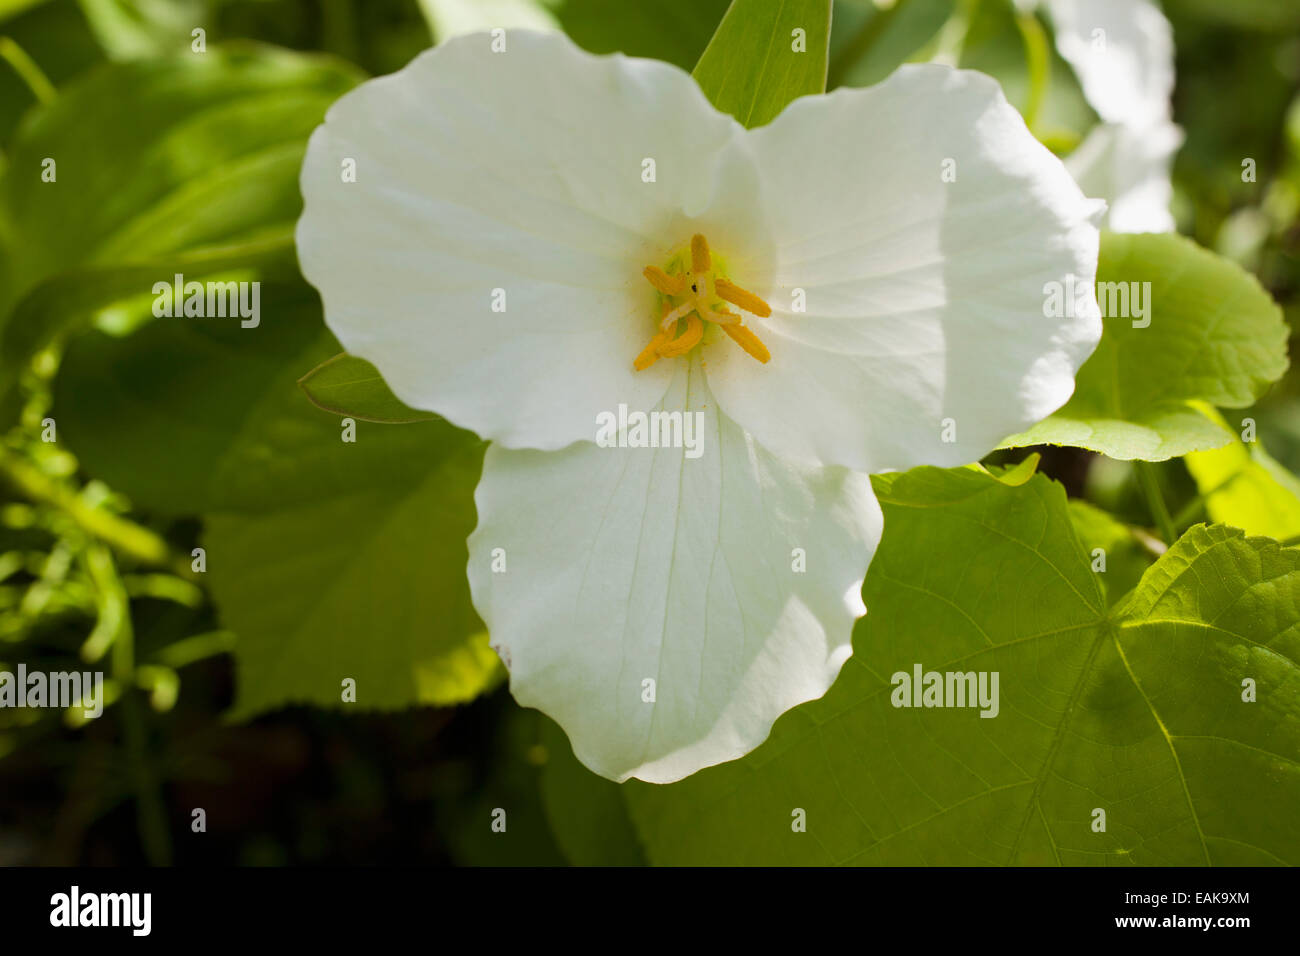 Service de l'Ouest Robin, du Pacifique ou de l'ouest Trillium trille blanc (Trillium ovatum), fleur, Province de Québec, Canada Banque D'Images